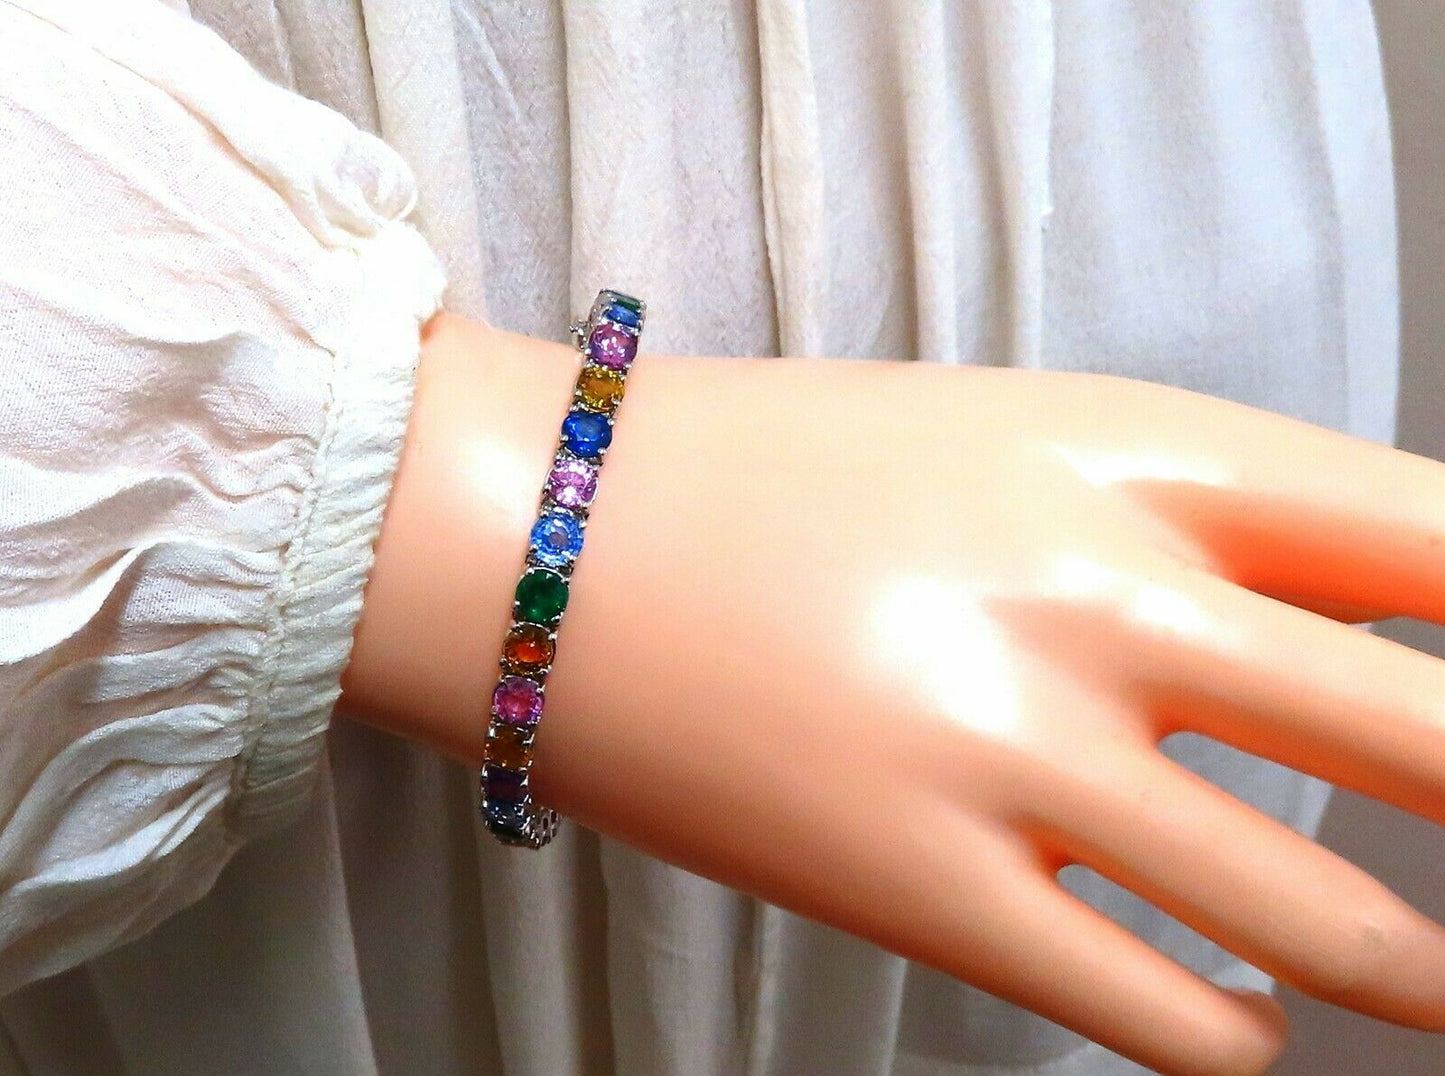 22Ct Natural Gem-Line Emerald Sapphire Ruby Bracelet 14Kt